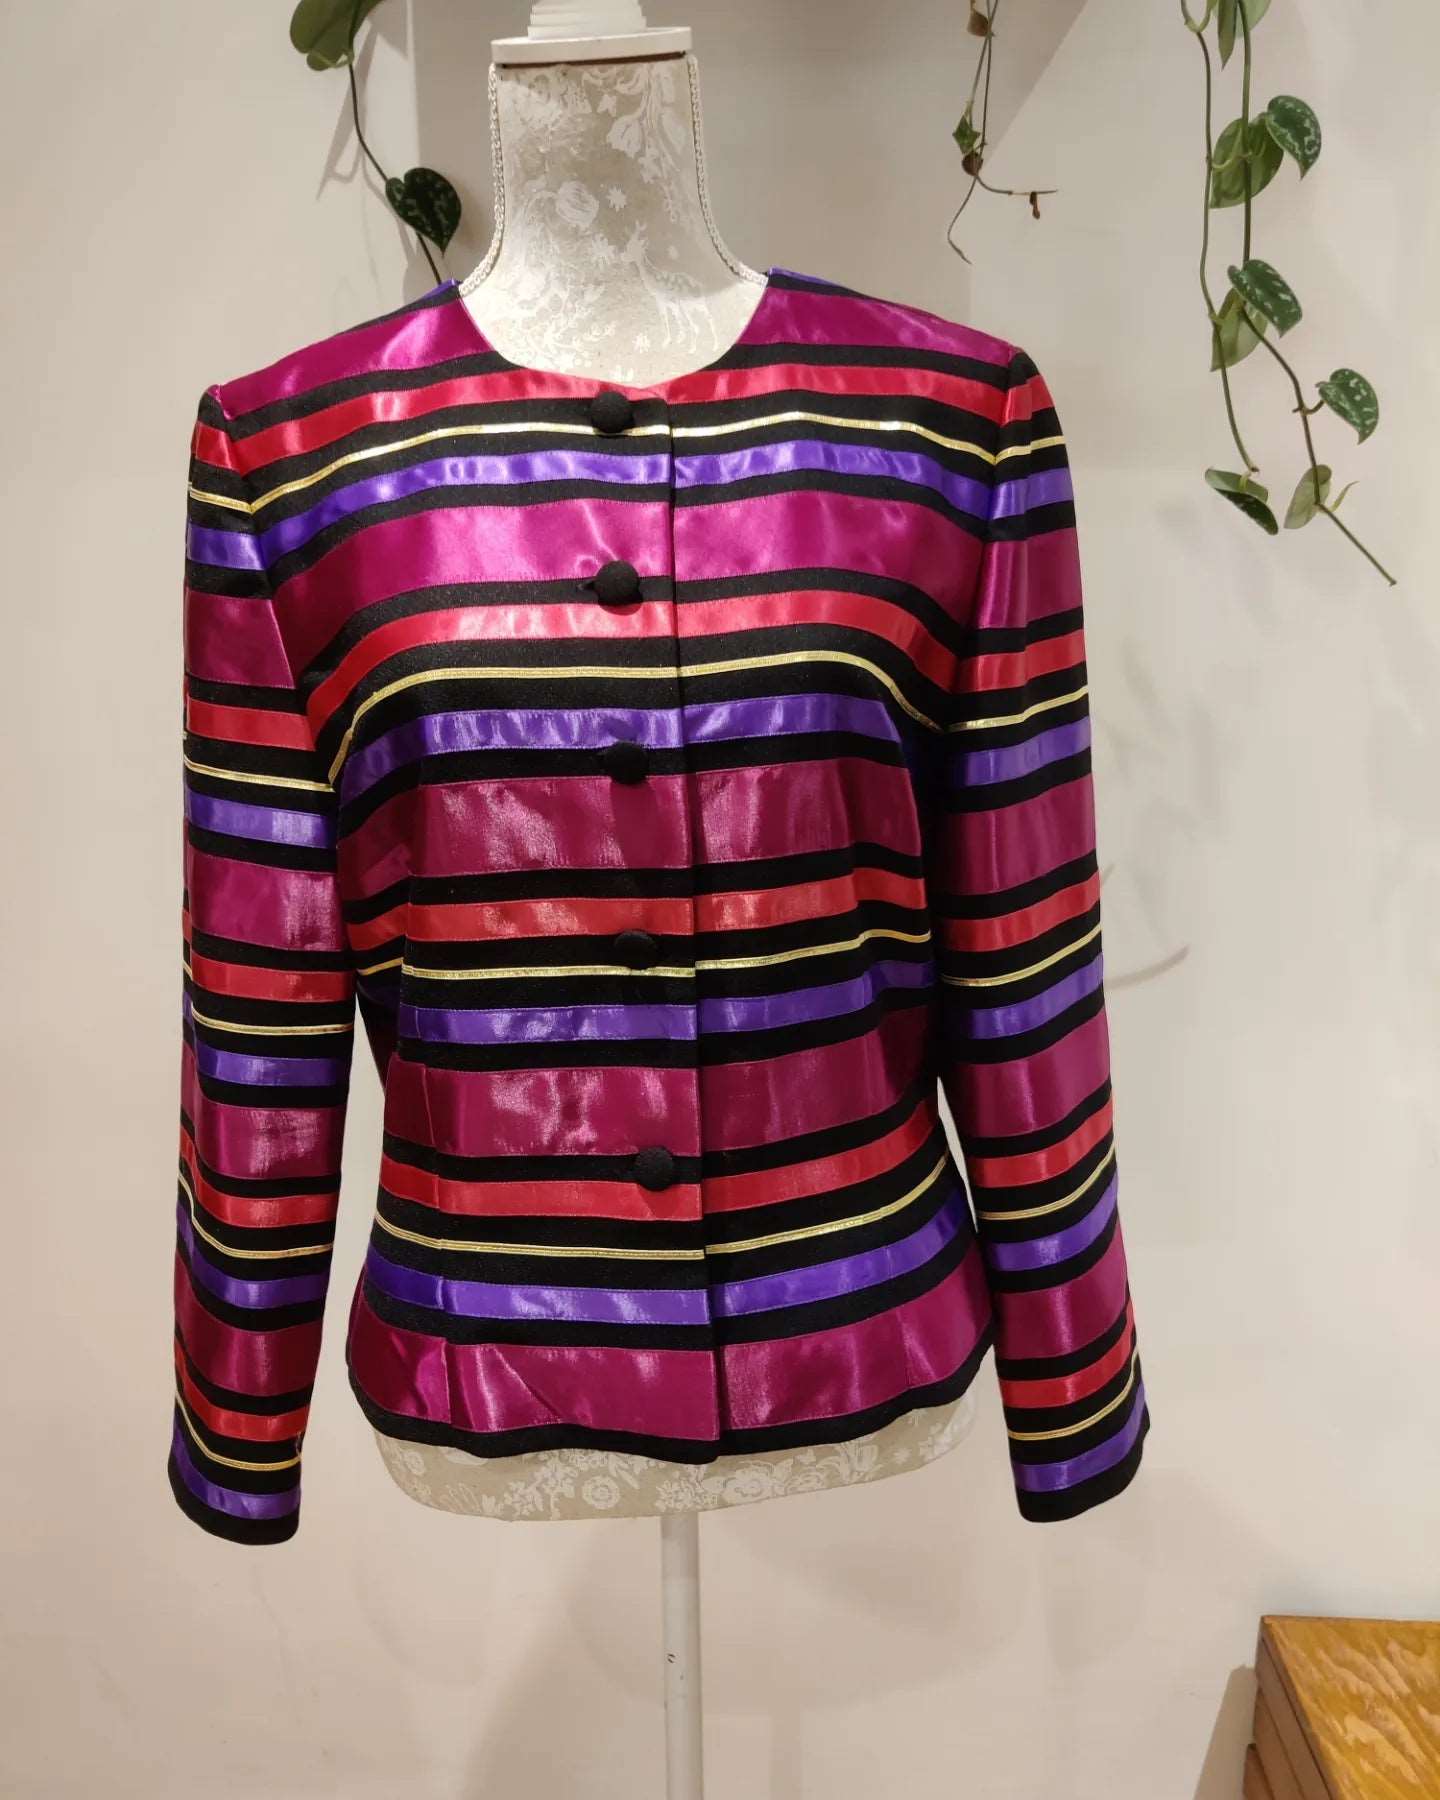 Rainbow 1980s striped jacket. Size 10-12